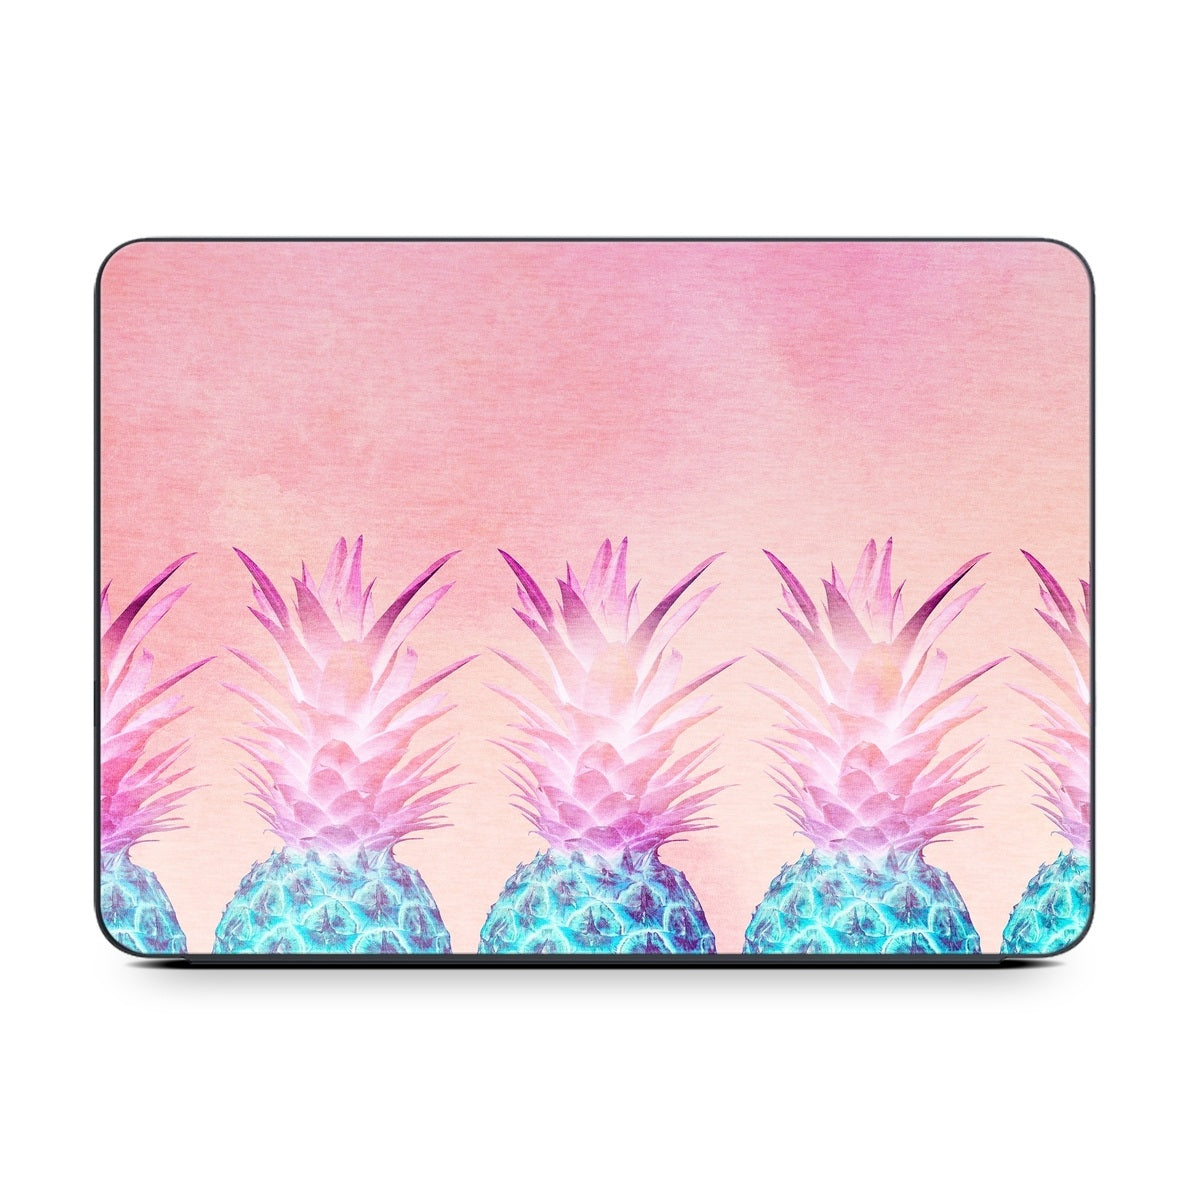 Pineapple Farm - Apple Smart Keyboard Folio Skin